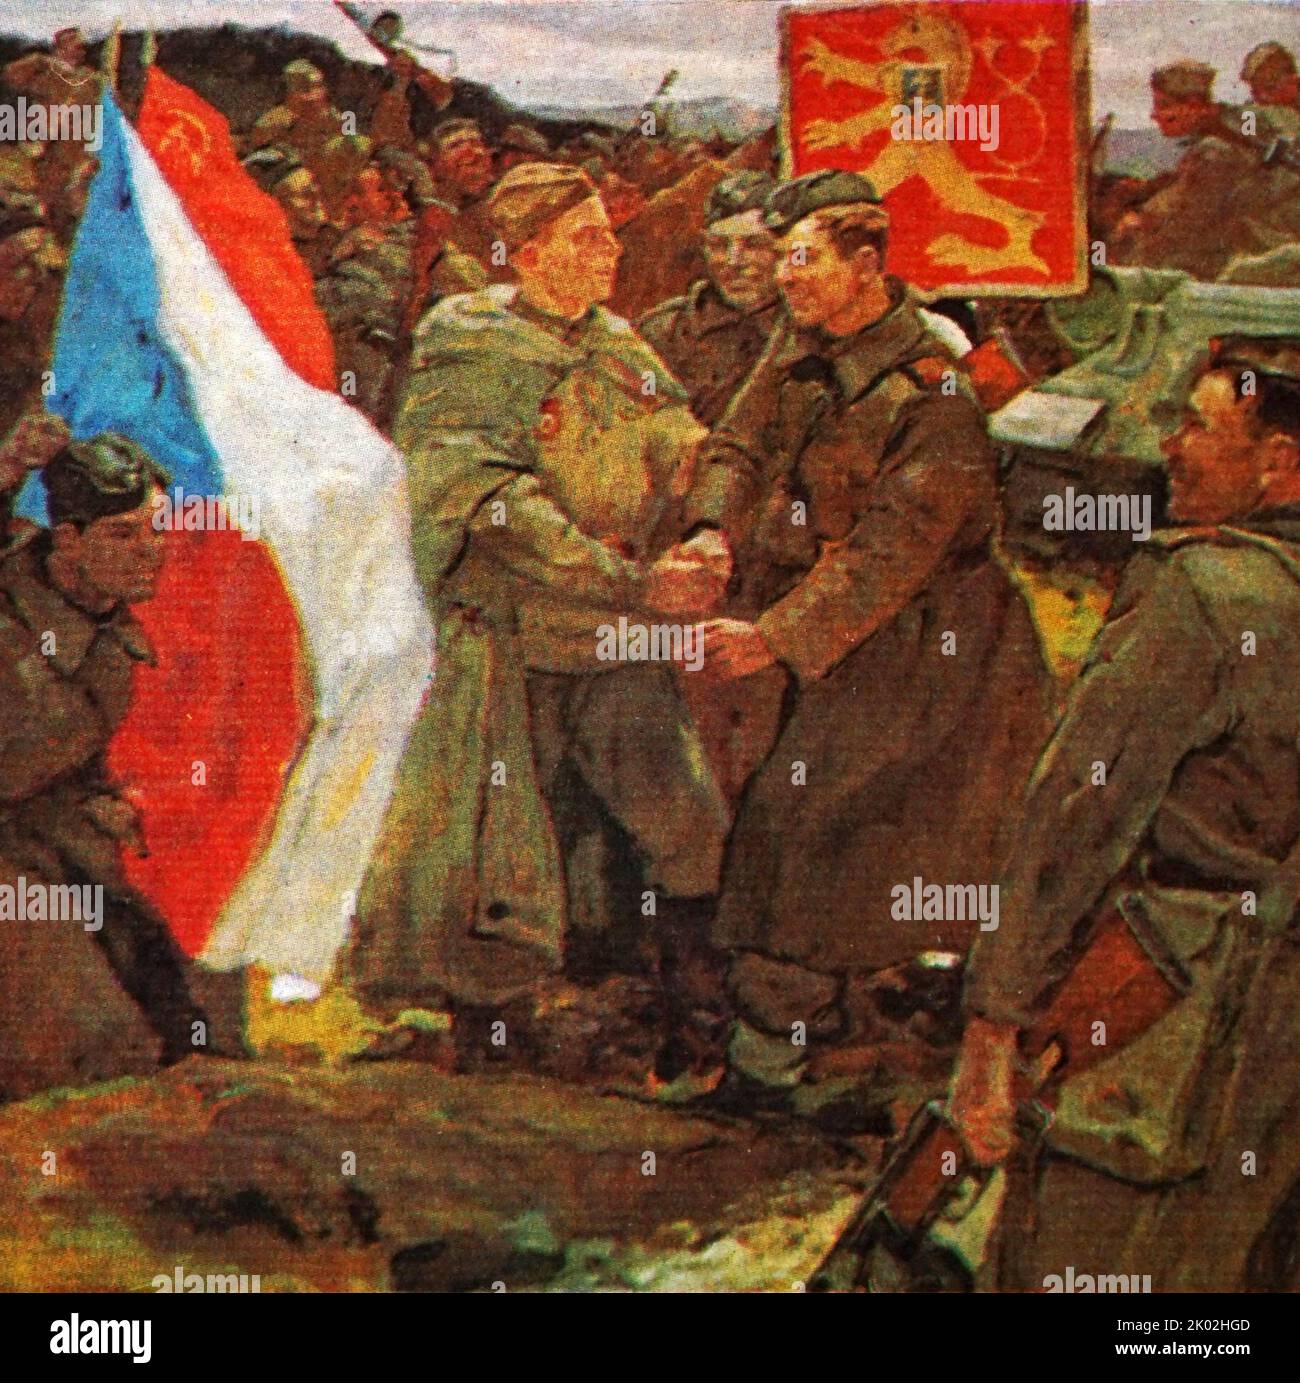 Vereidigte Brüder. Gemälde von P.I. Zhigimont. Tschechoslowakische und sowjetische Soldaten vereinen sich gegen den gemeinsamen Feind. Stockfoto